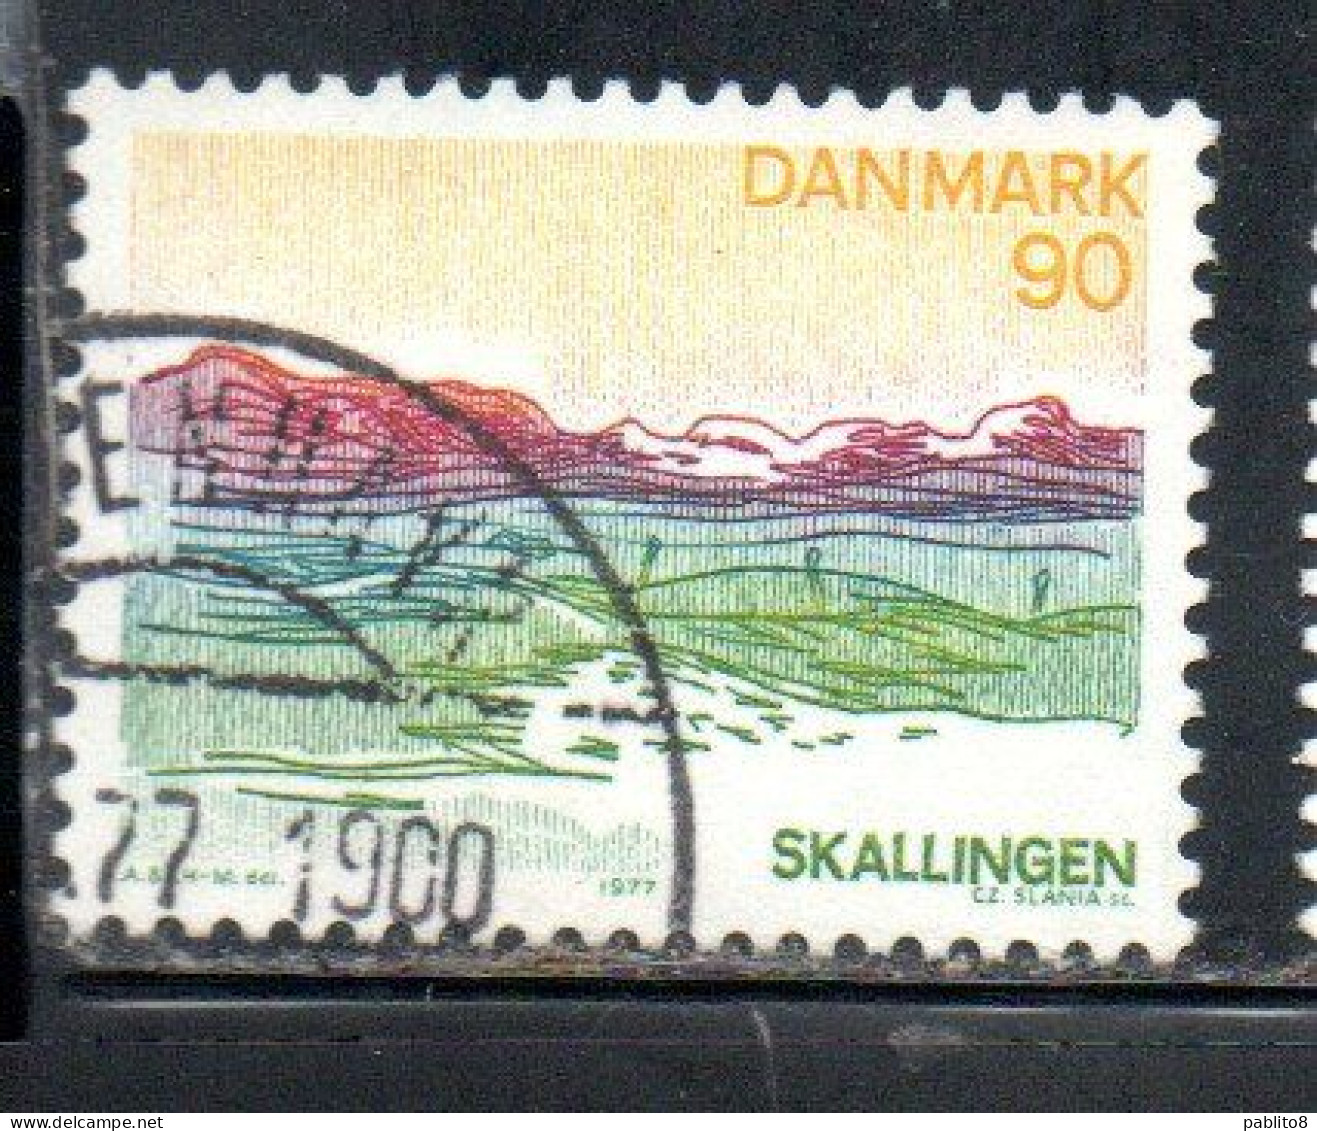 DANEMARK DANMARK DENMARK DANIMARCA 1977 LANDSCAPES SOUTHERN JUTLAND 90o USED USATO OBLITERE' - Used Stamps